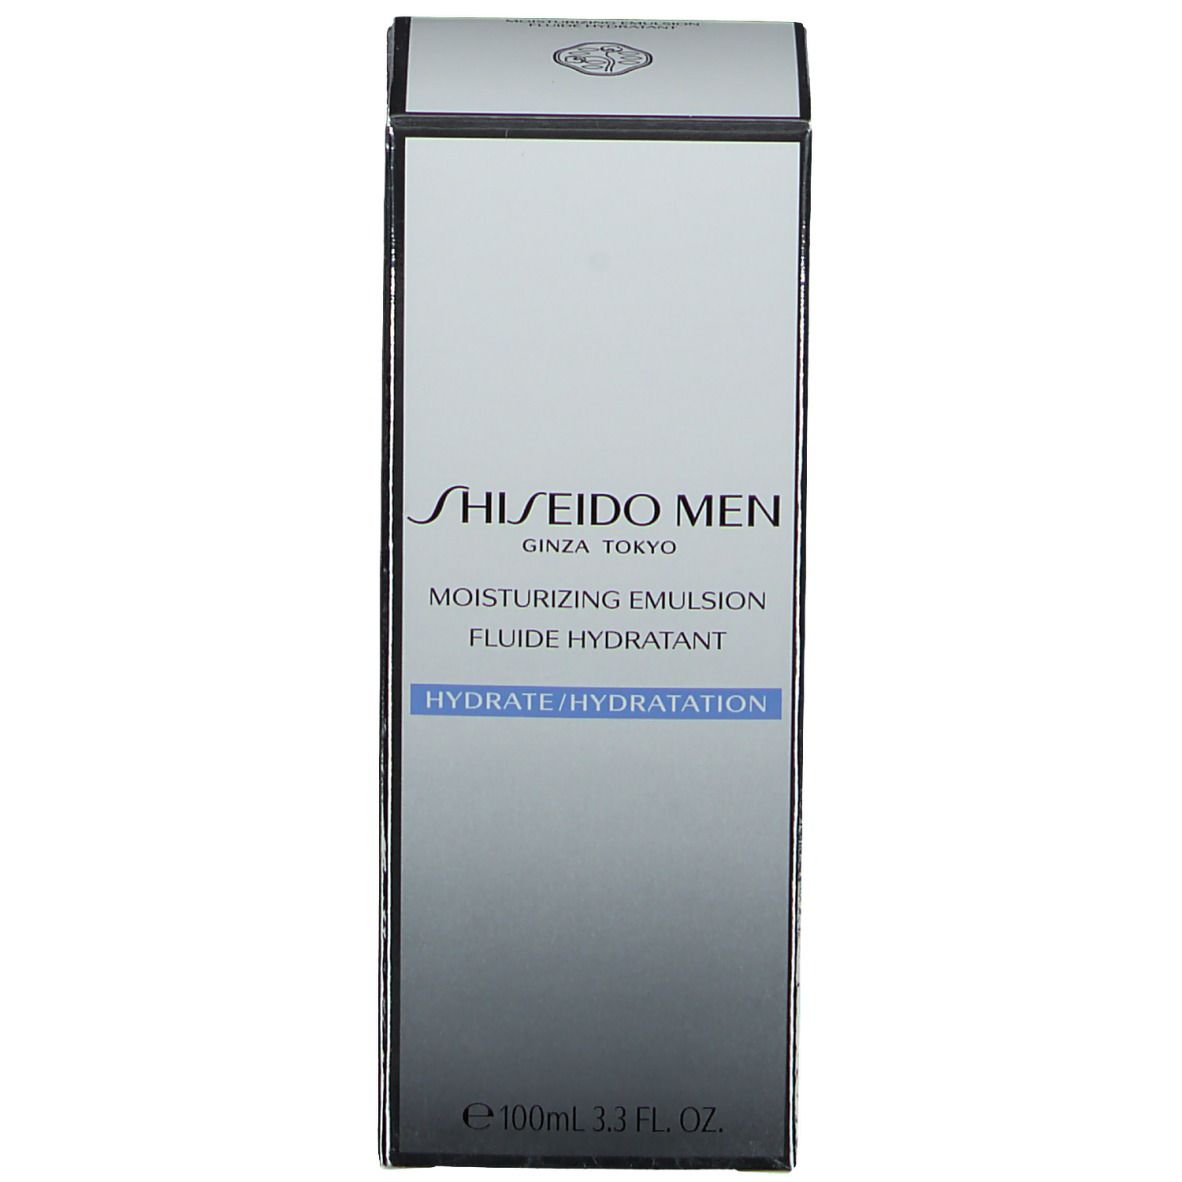 Shiseido Men Moisturizing Emulsion